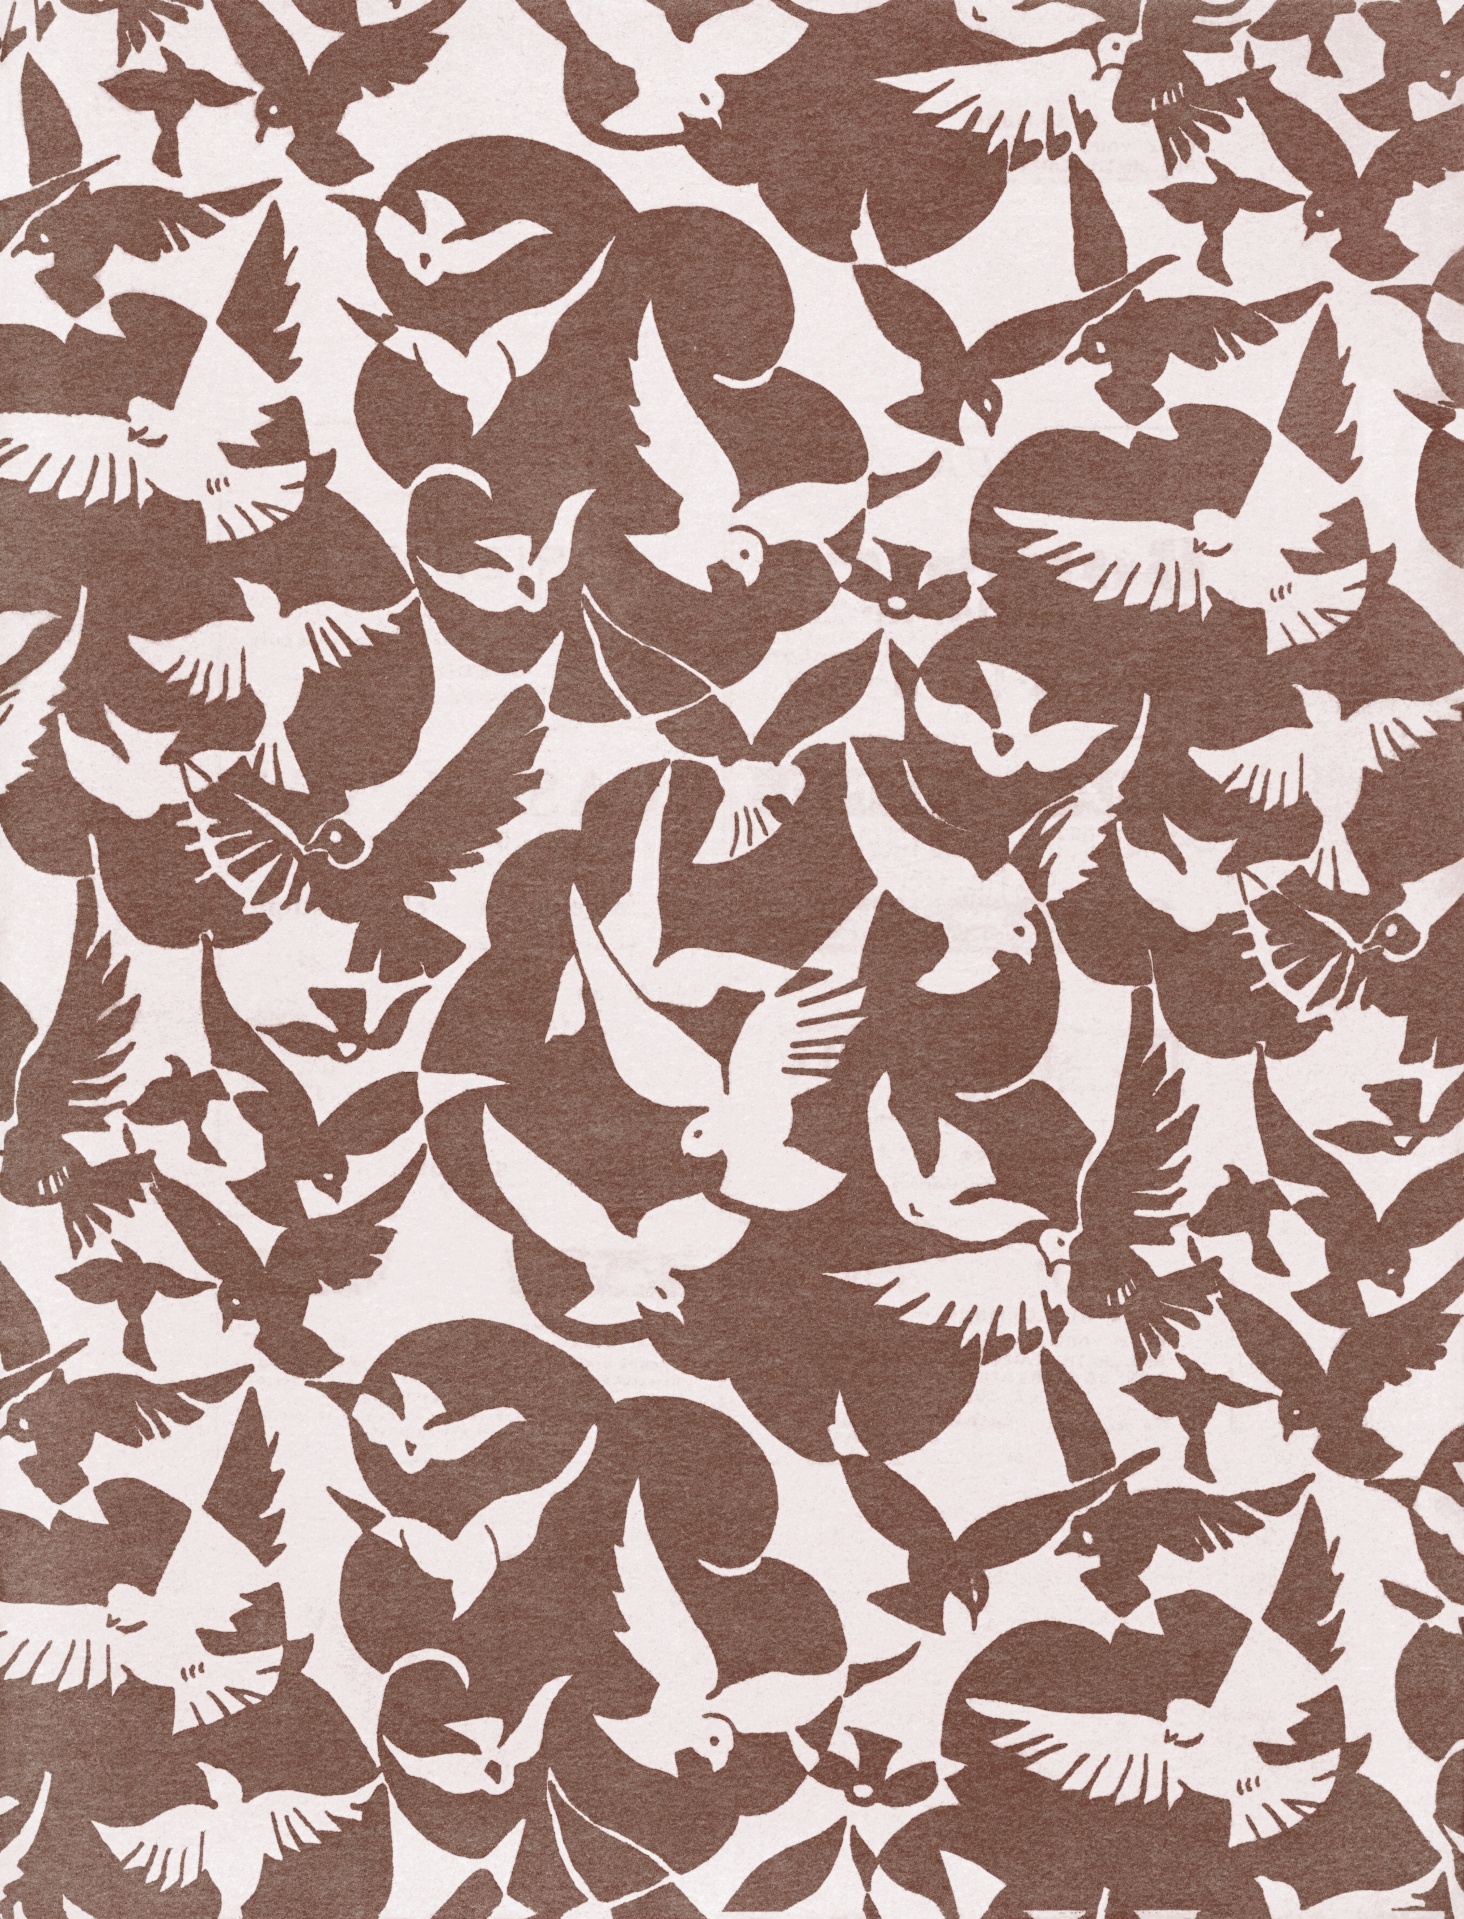 Birds Retro Pattern Background